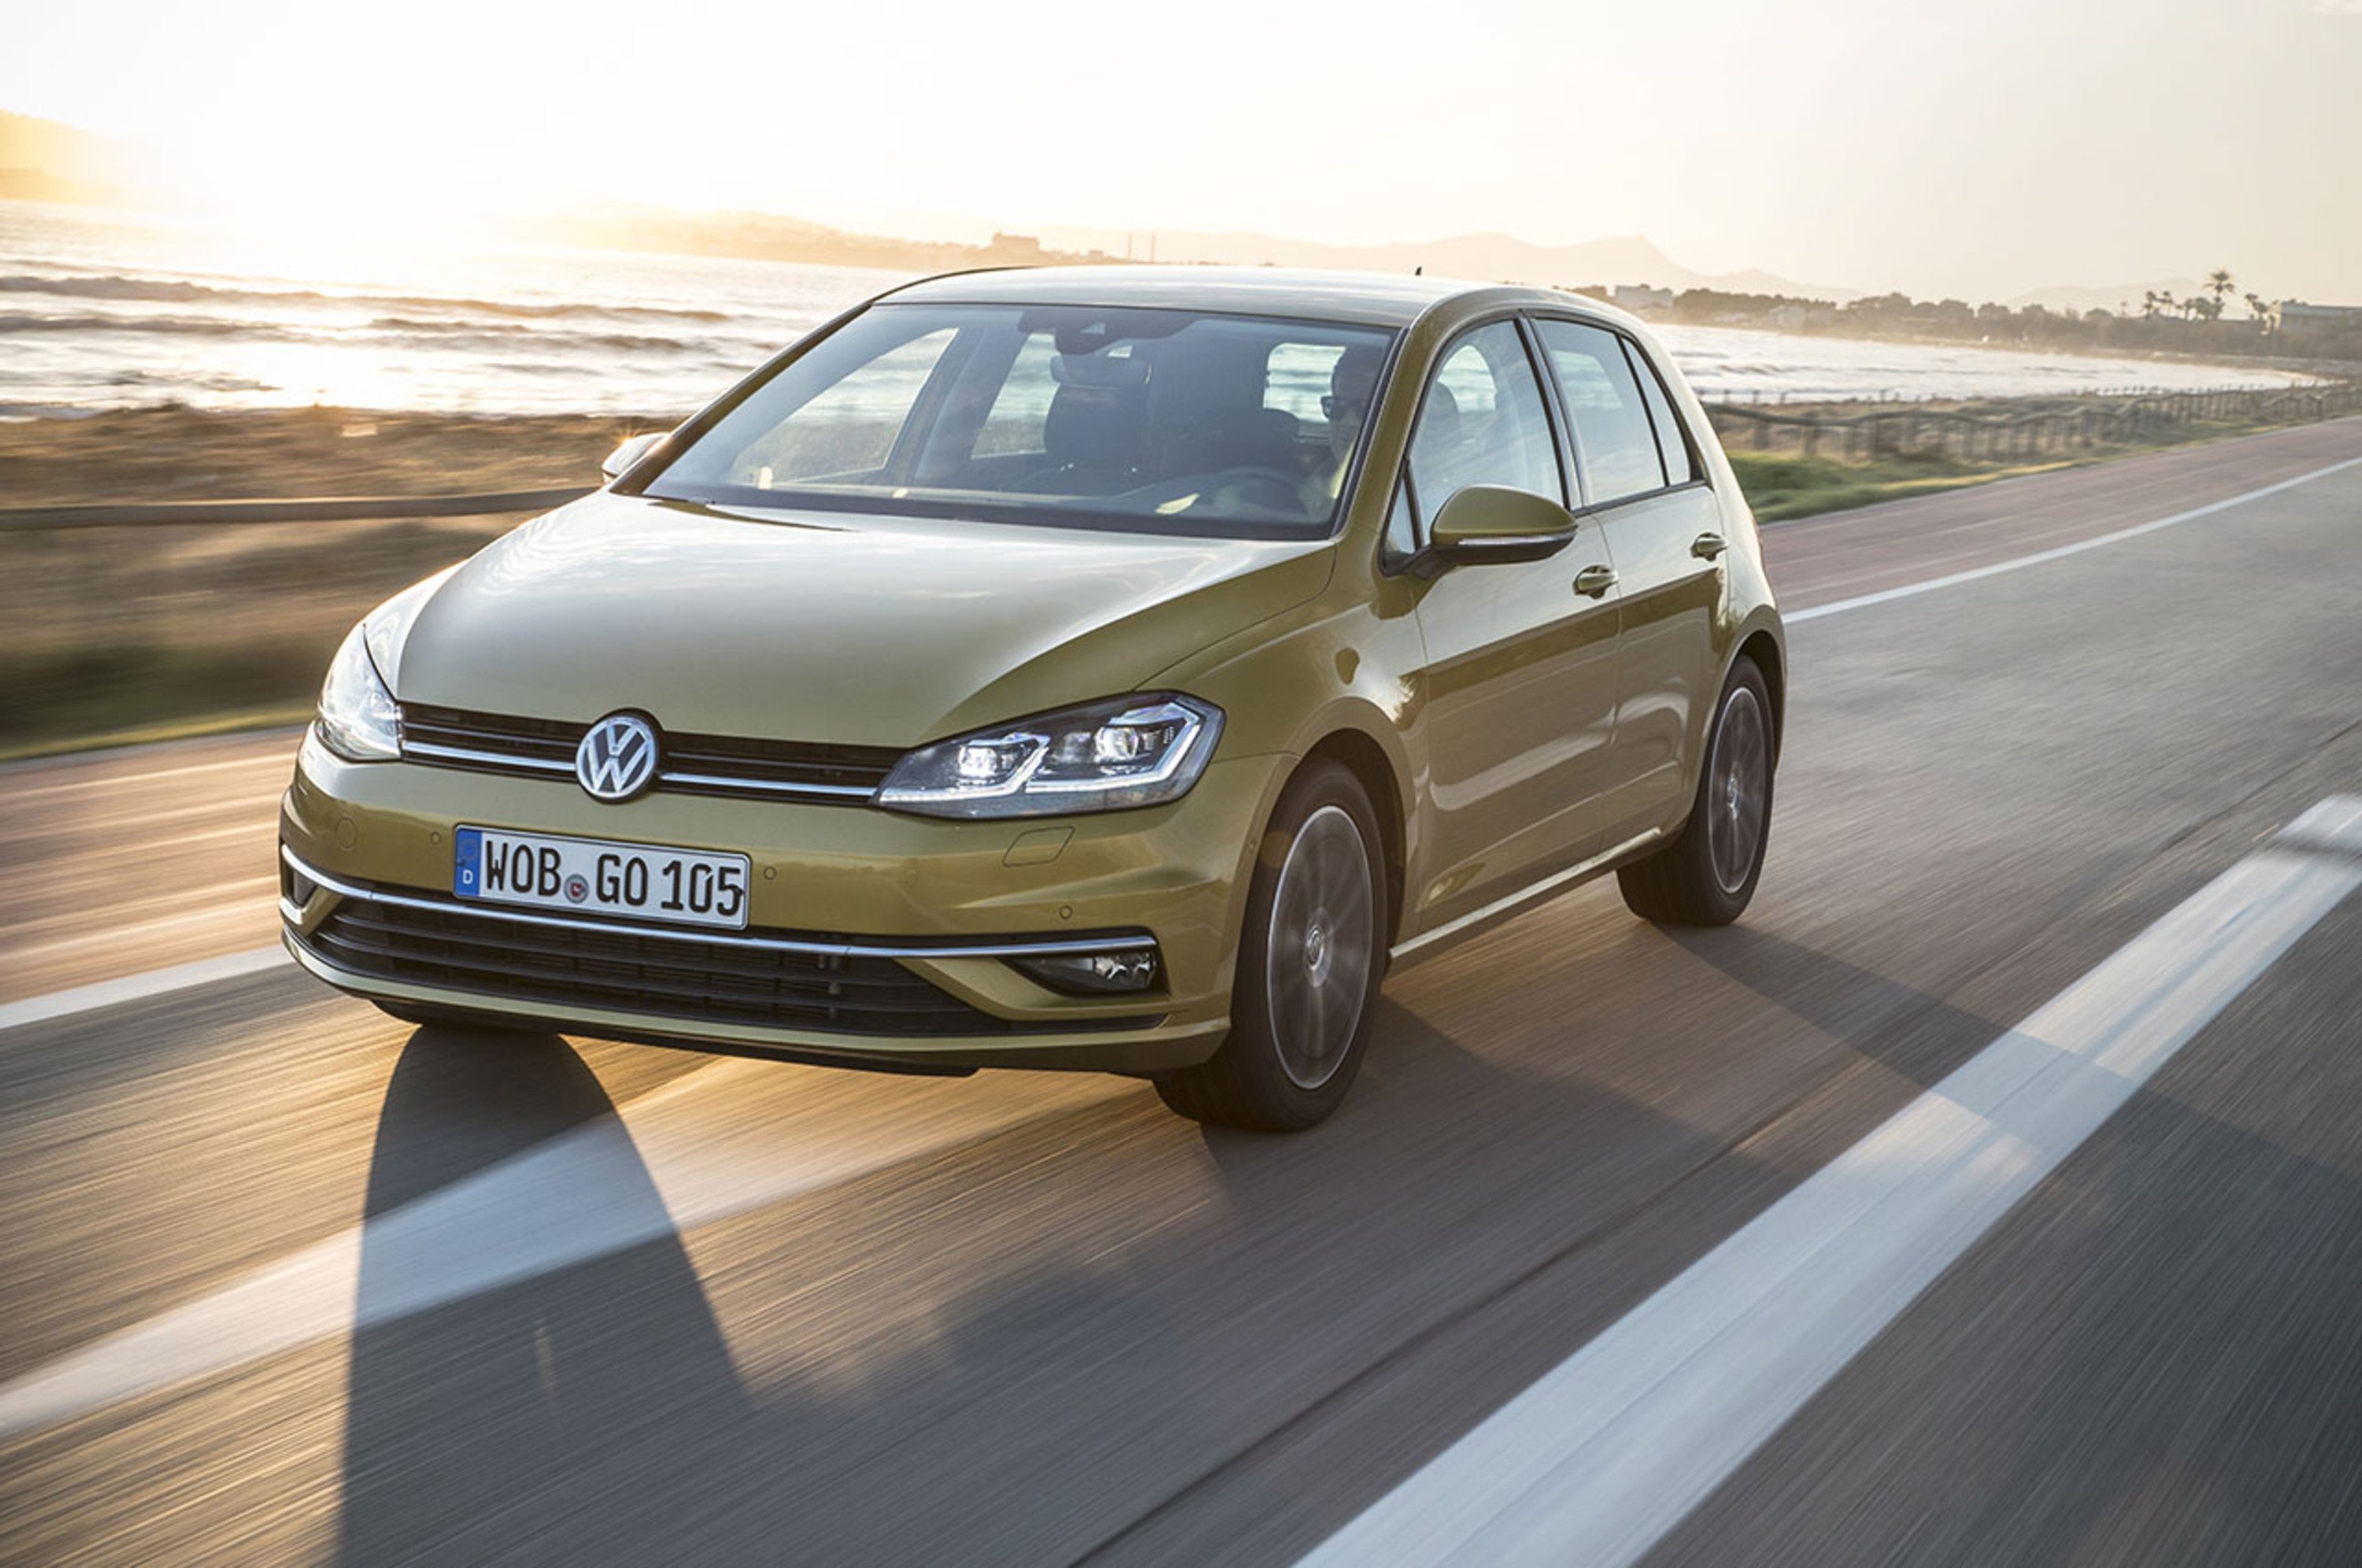 Volkswagen Golf, in arrivo il motore metano 1.5 TGI Evo